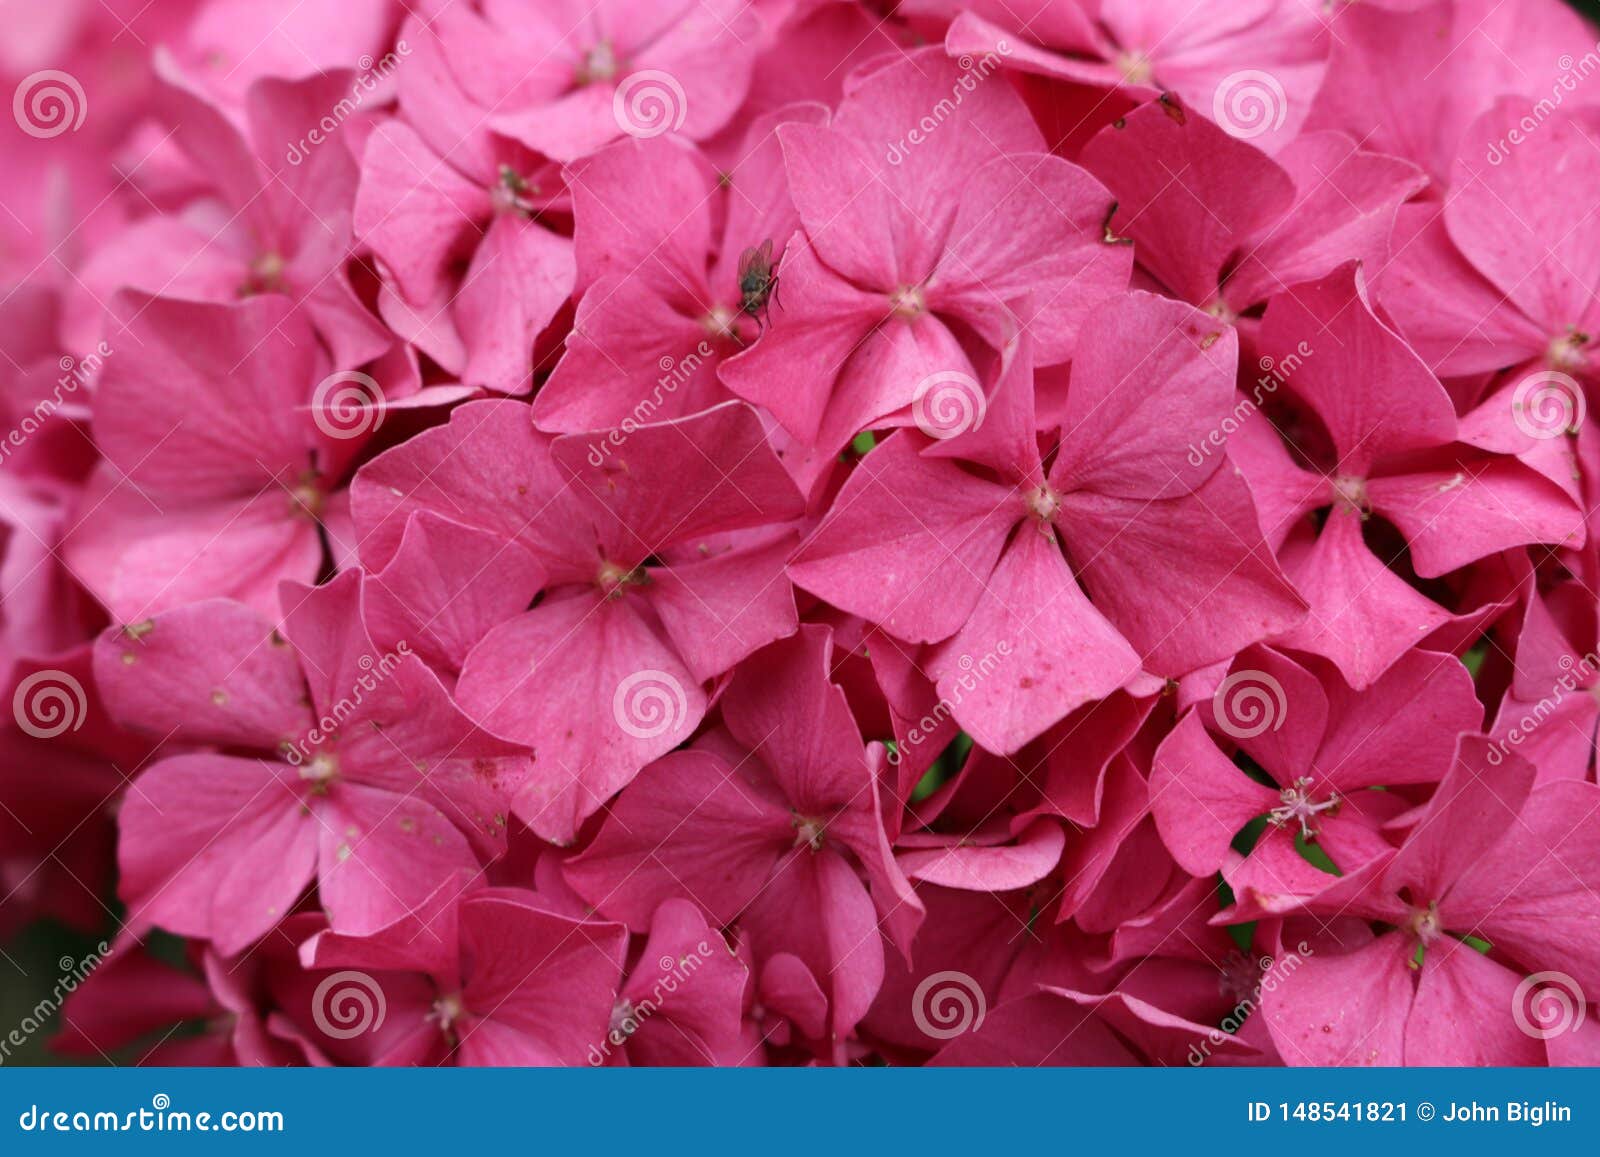 pink mophead hydrangea flowers